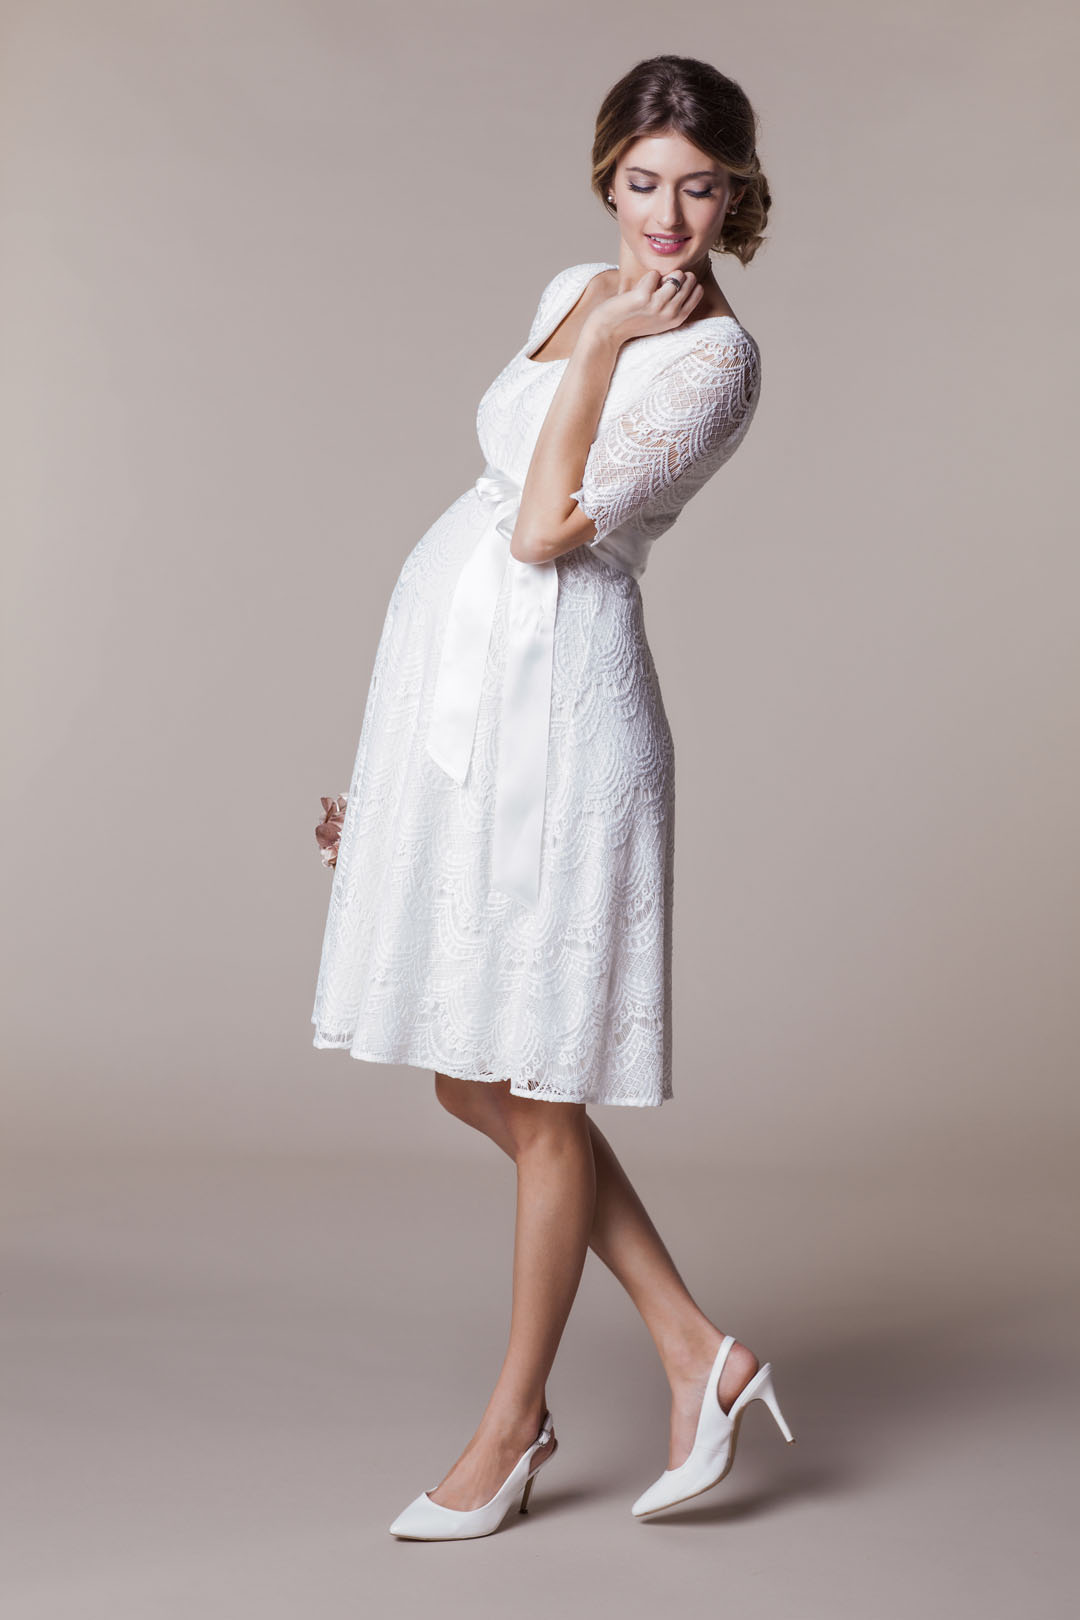 Heiraten mit Babybauch im Hochzeitskleid für Schwangere von Tiffany Rose: Modell Verona